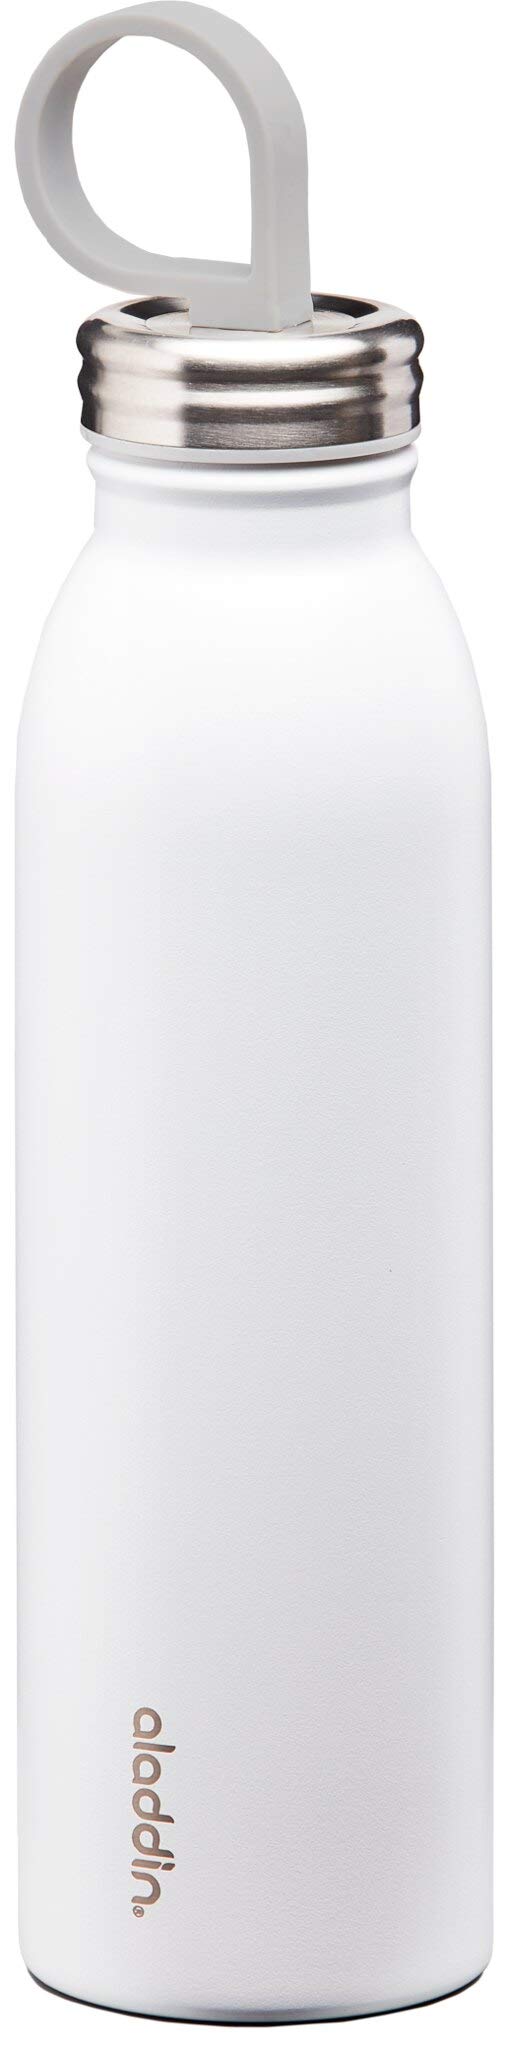 Aladdin Chilled Colour Thermavac Trinkflasche Edelstahl 0.55L White – Thermosflasche Hält 9 Stunden Kalt - Doppelwandige Vakuumisolierung - Wasserflasche BPA-Frei - Spülmaschinenfest